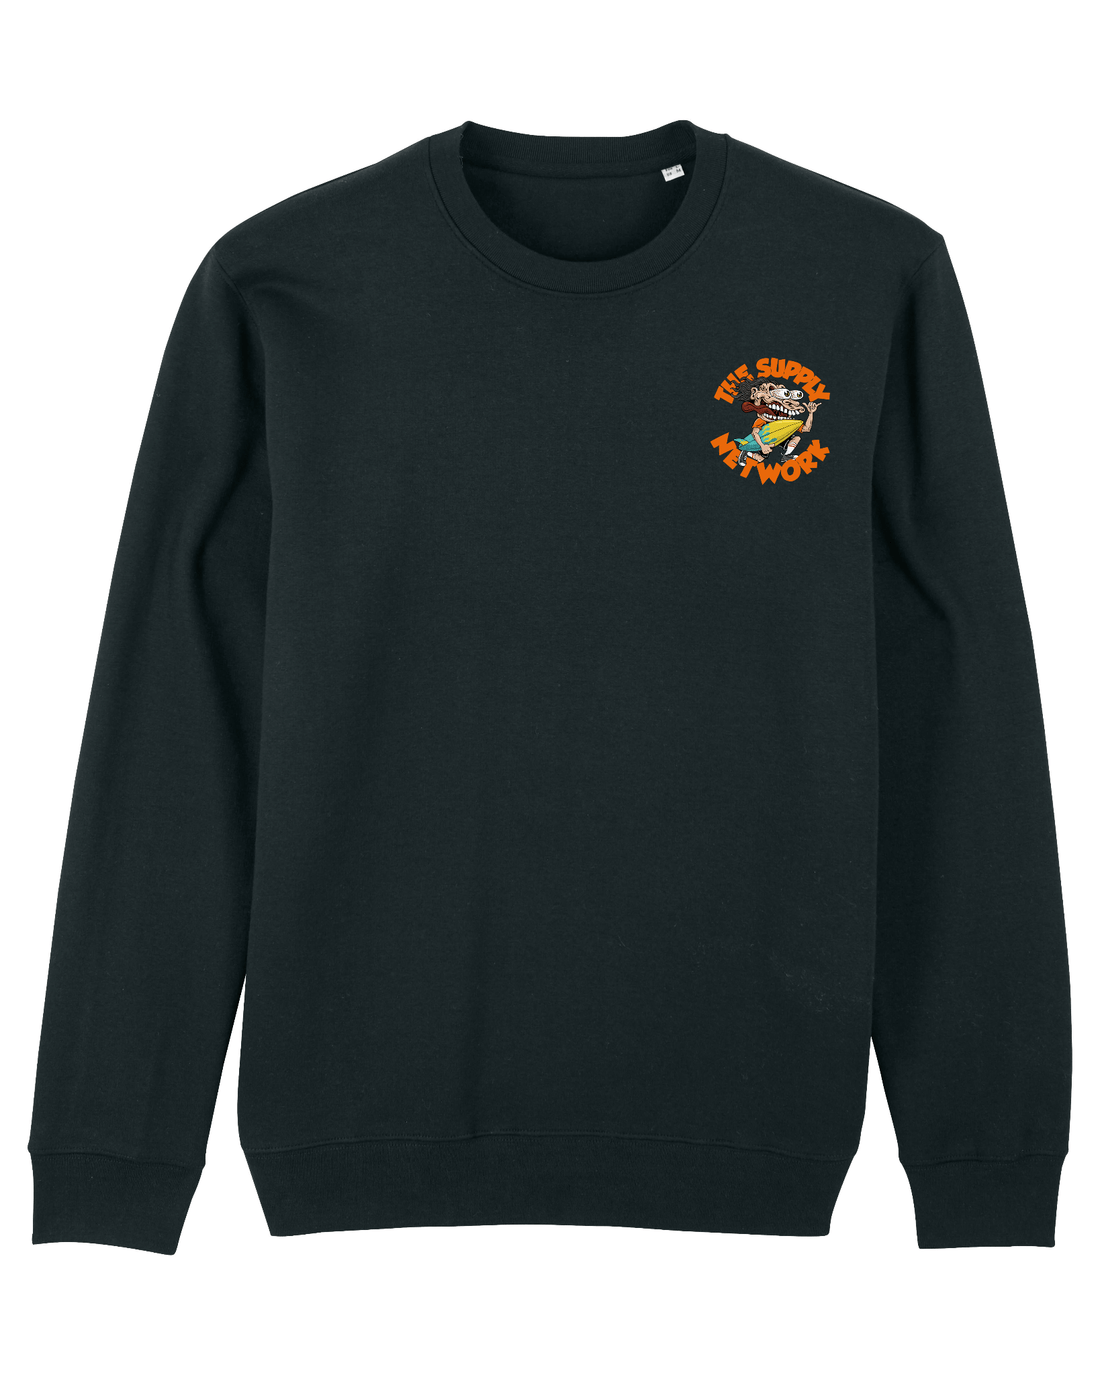 Black Skater Sweatshirt, Surf Crazy Front Print